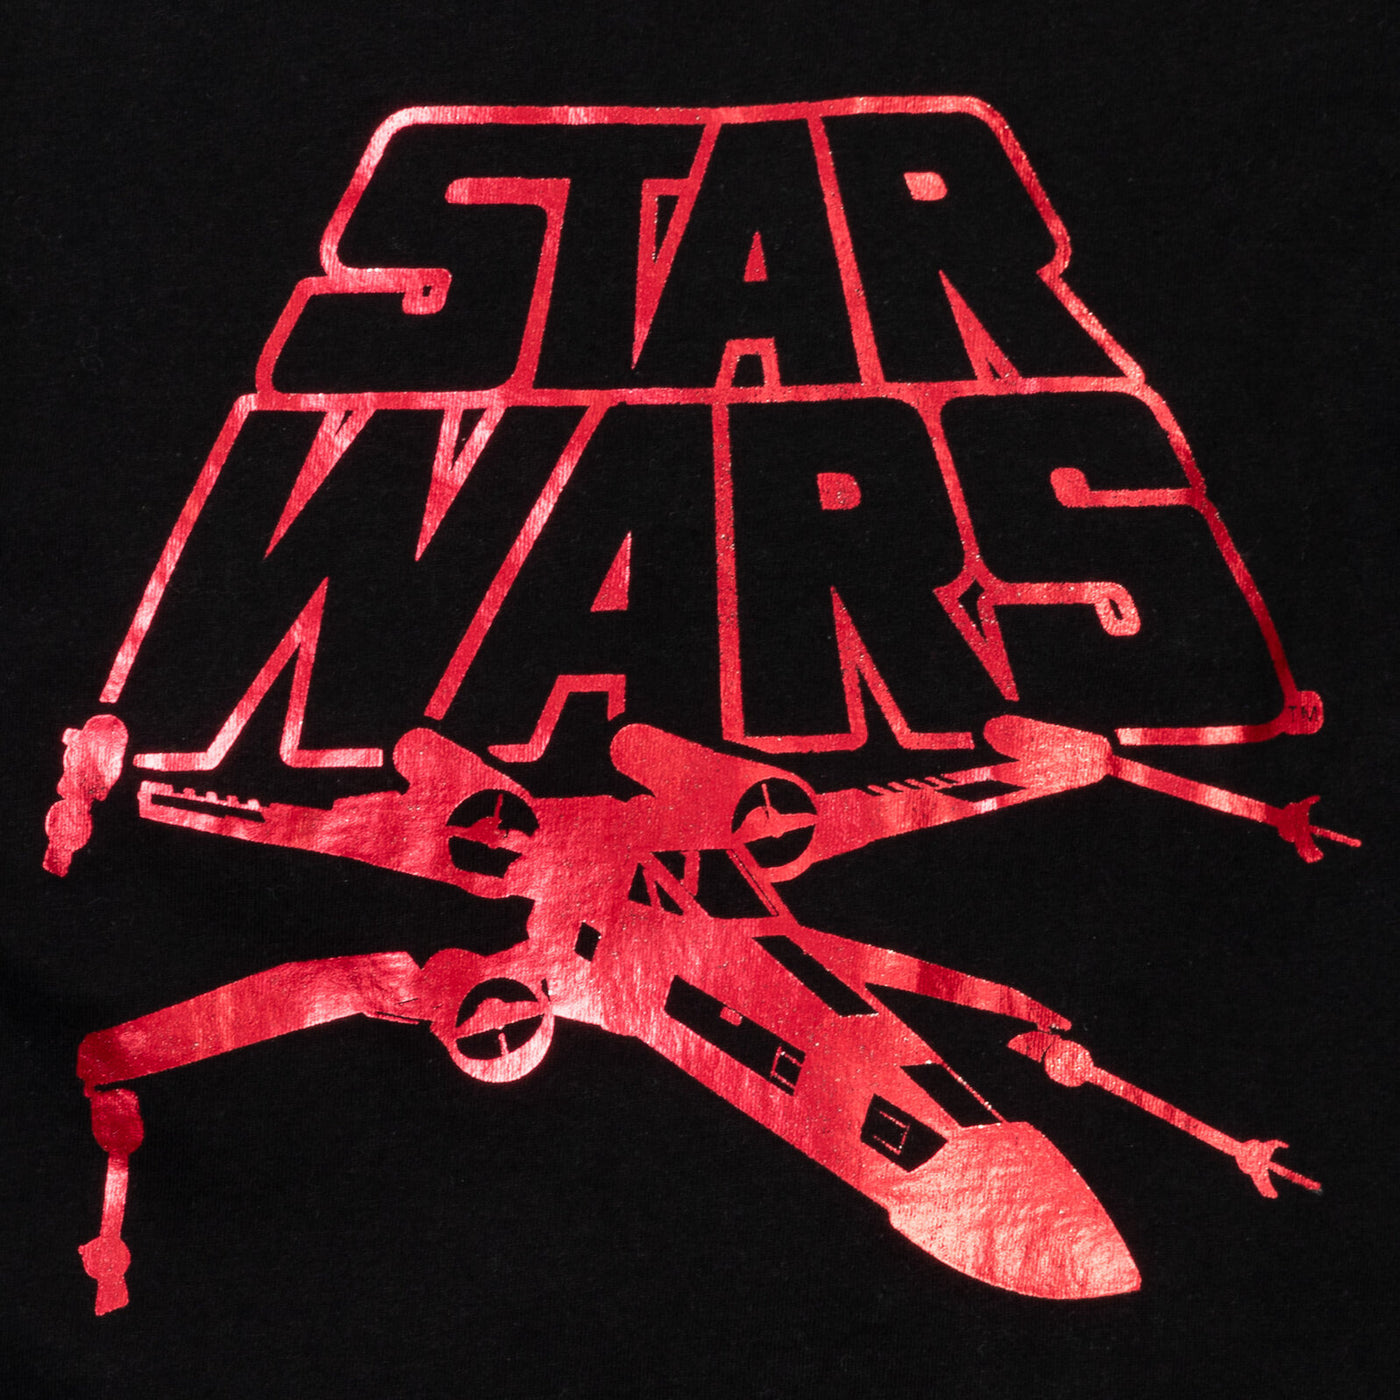 STAR WARS Star Wars X-Wing T-Shirt